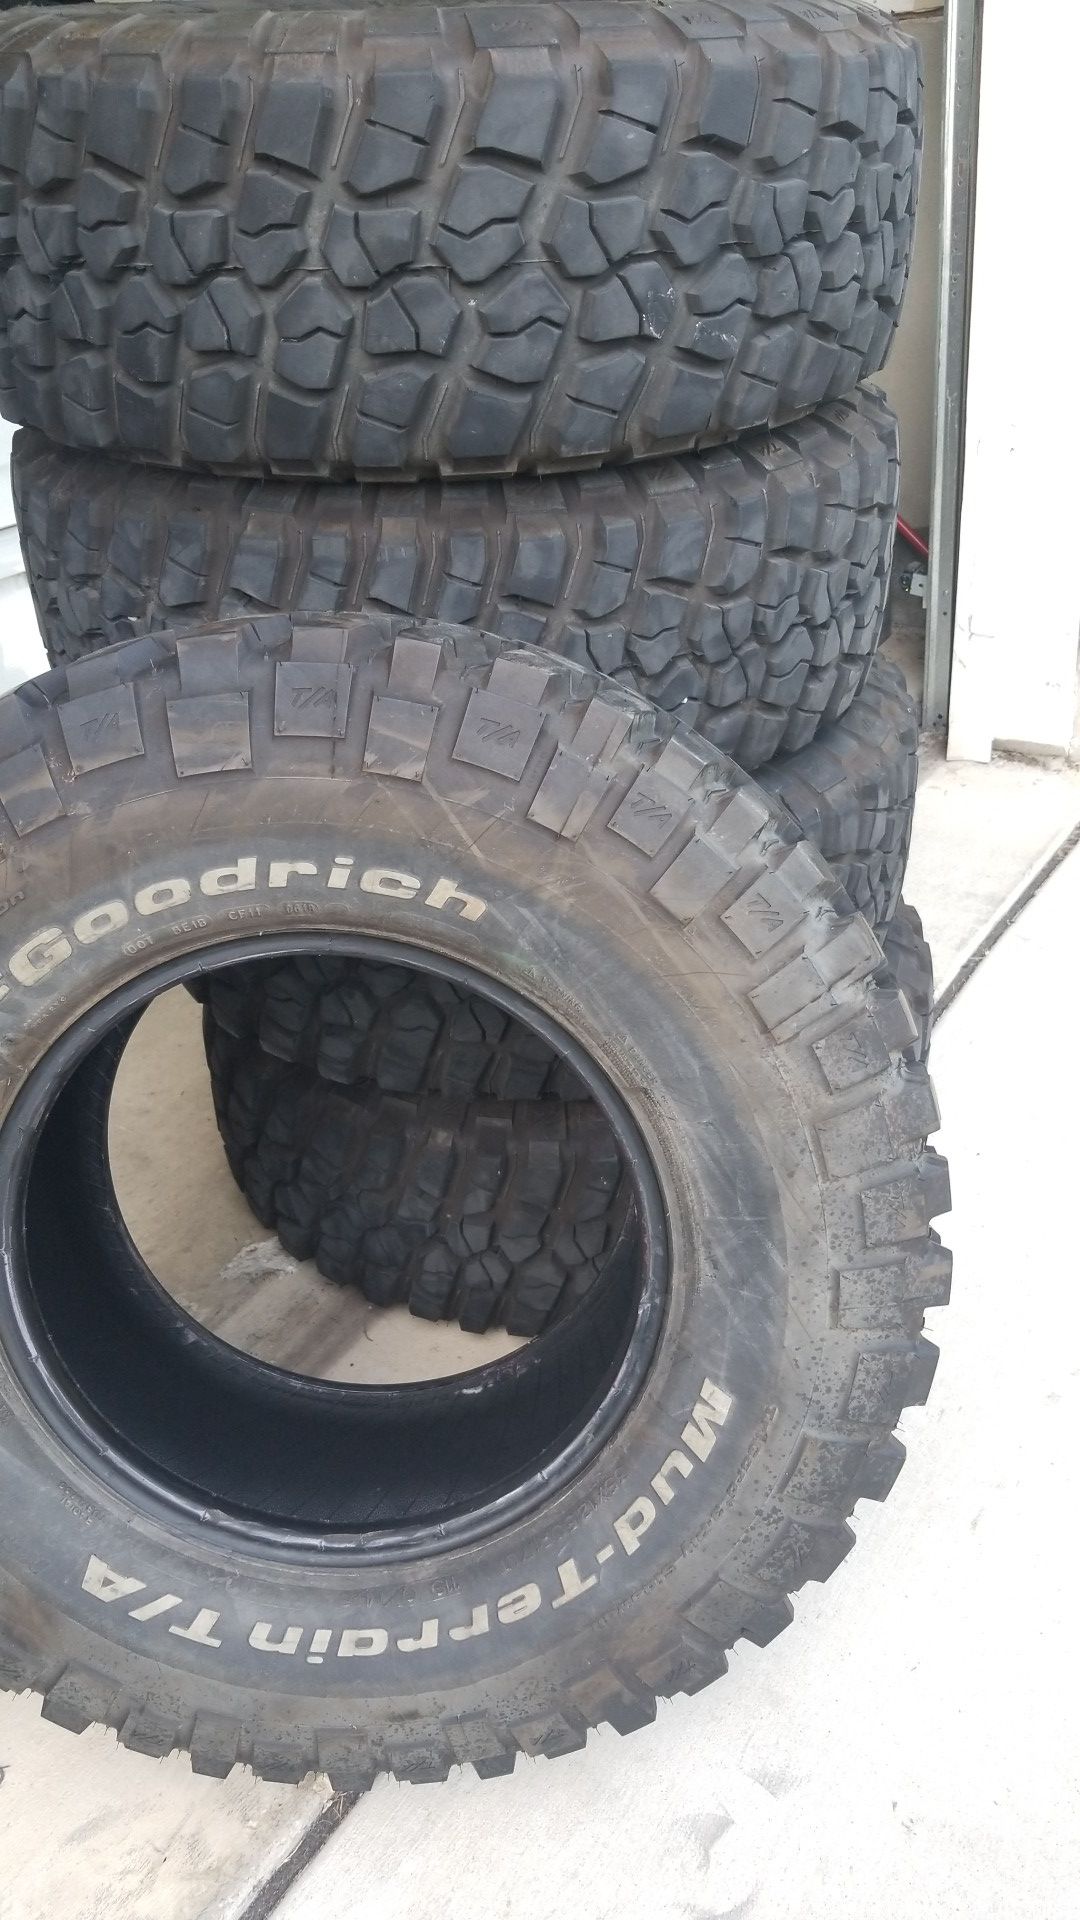 Mud terrain tires